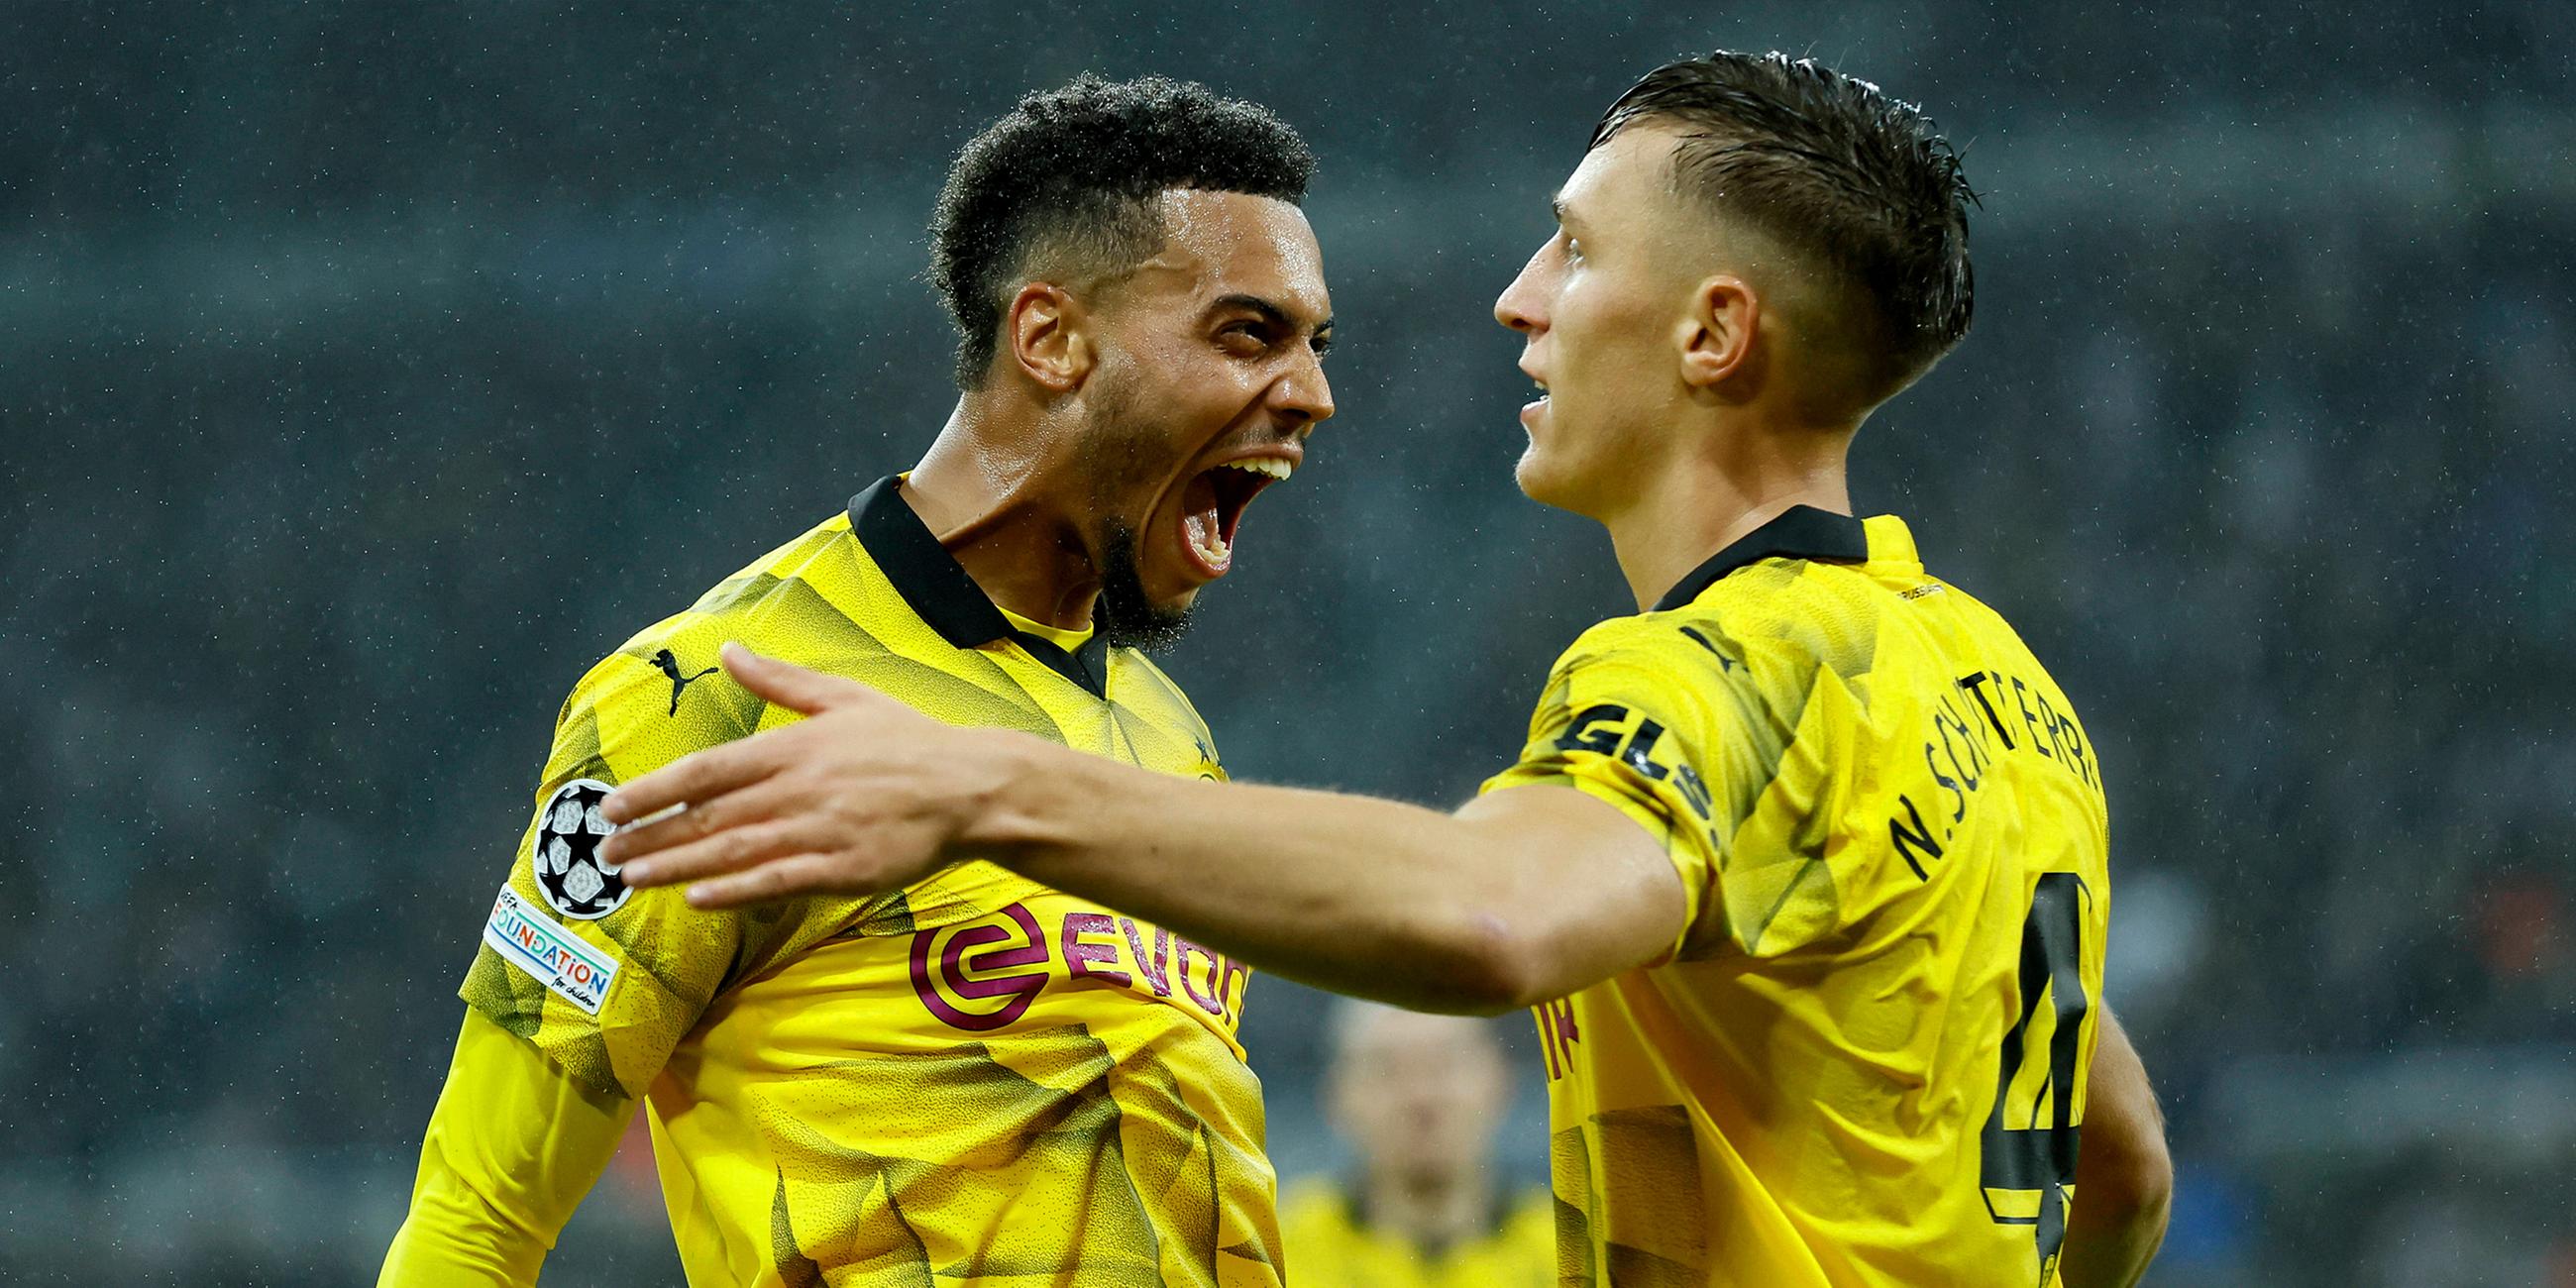 Nmecha von Borussia Dortmund und Nico Schlotterbeck von Borussia Dortmund feiern das erste Tor.